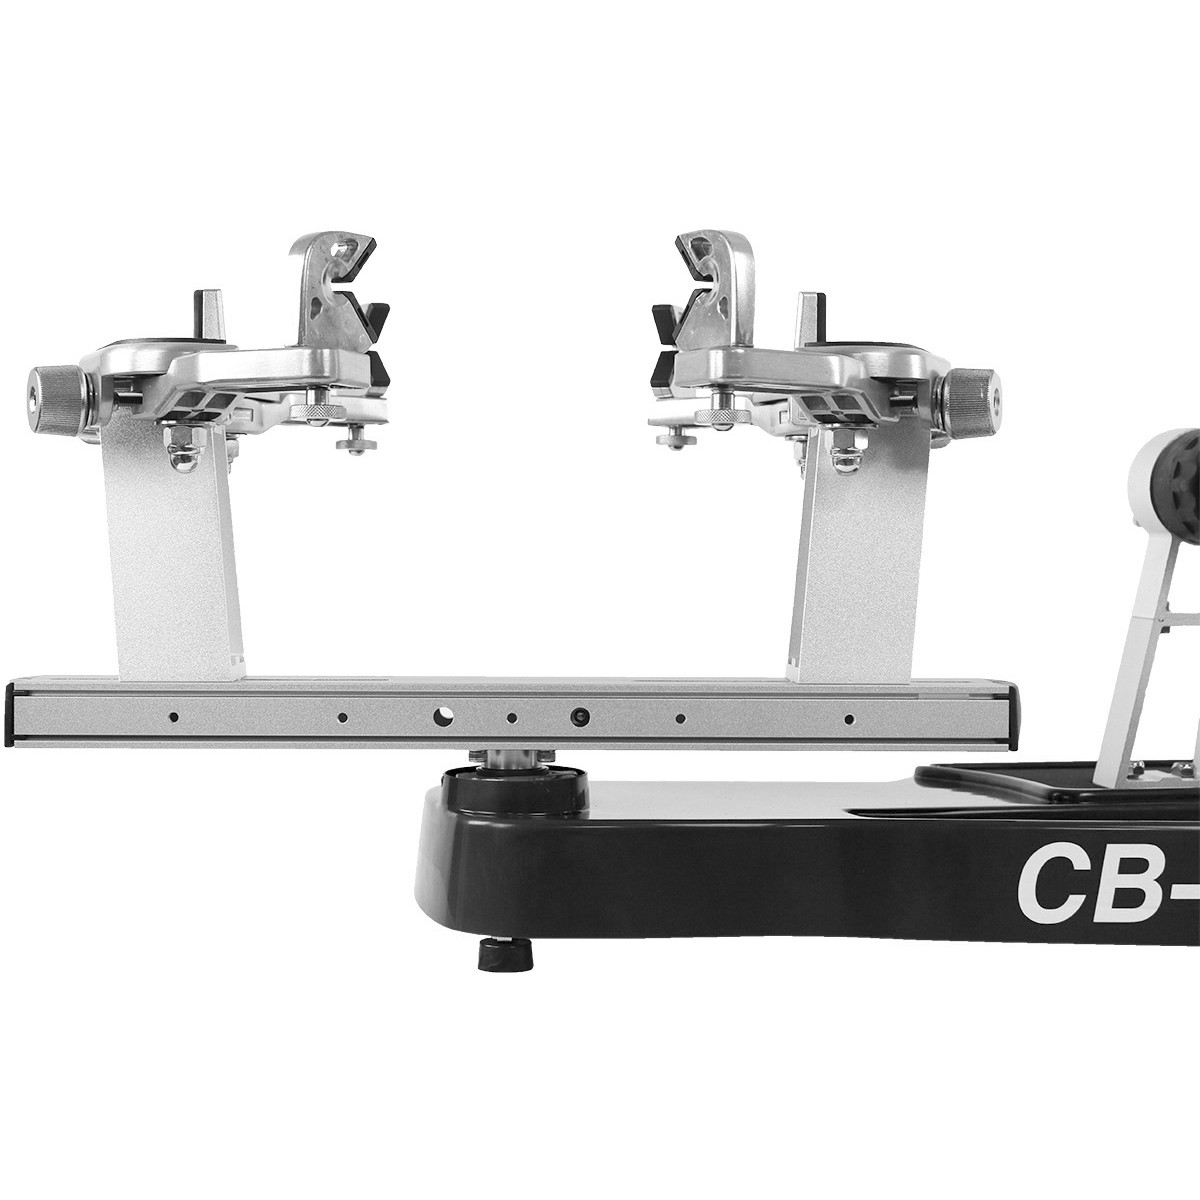 MACHINE A CORDER CB10 - TENNISPRO - Machines à corder - Matériel